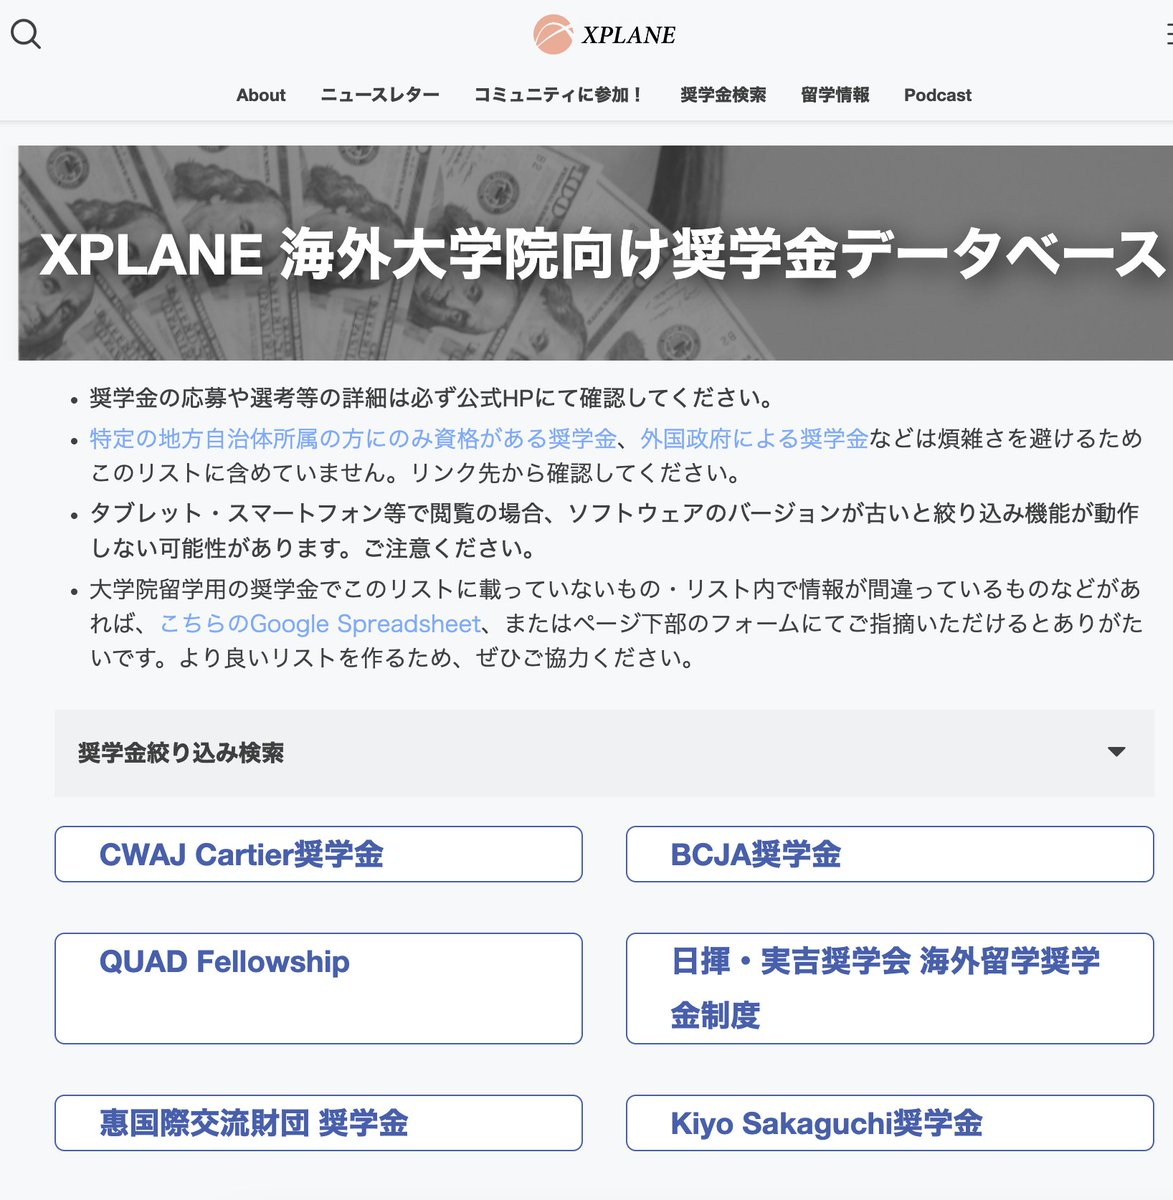 大学院留学支援のコミュニティであるXPLANEが出している「海外大学院向け奨学金データベース」です。外国政府の奨学金ではなく、日本語で読めて日本人が応募し易いリストです。獲得者に直接質問できるSlackコミュニティがあるのも大きなメリットです。xplane.jp/fellowships-li…